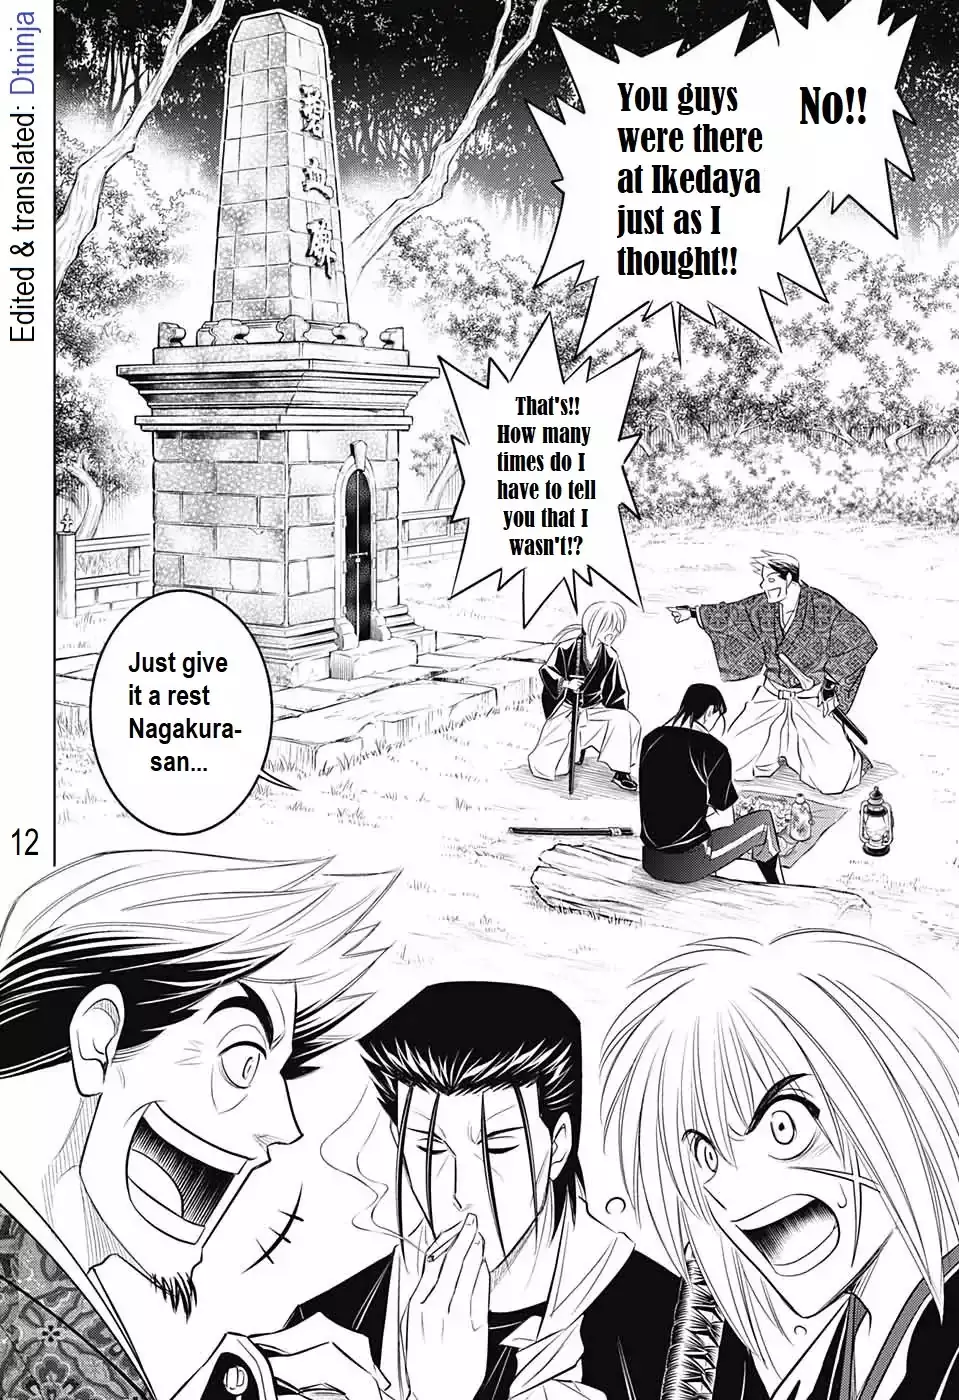 Rurouni Kenshin: Hokkaido Arc - 15 page 11